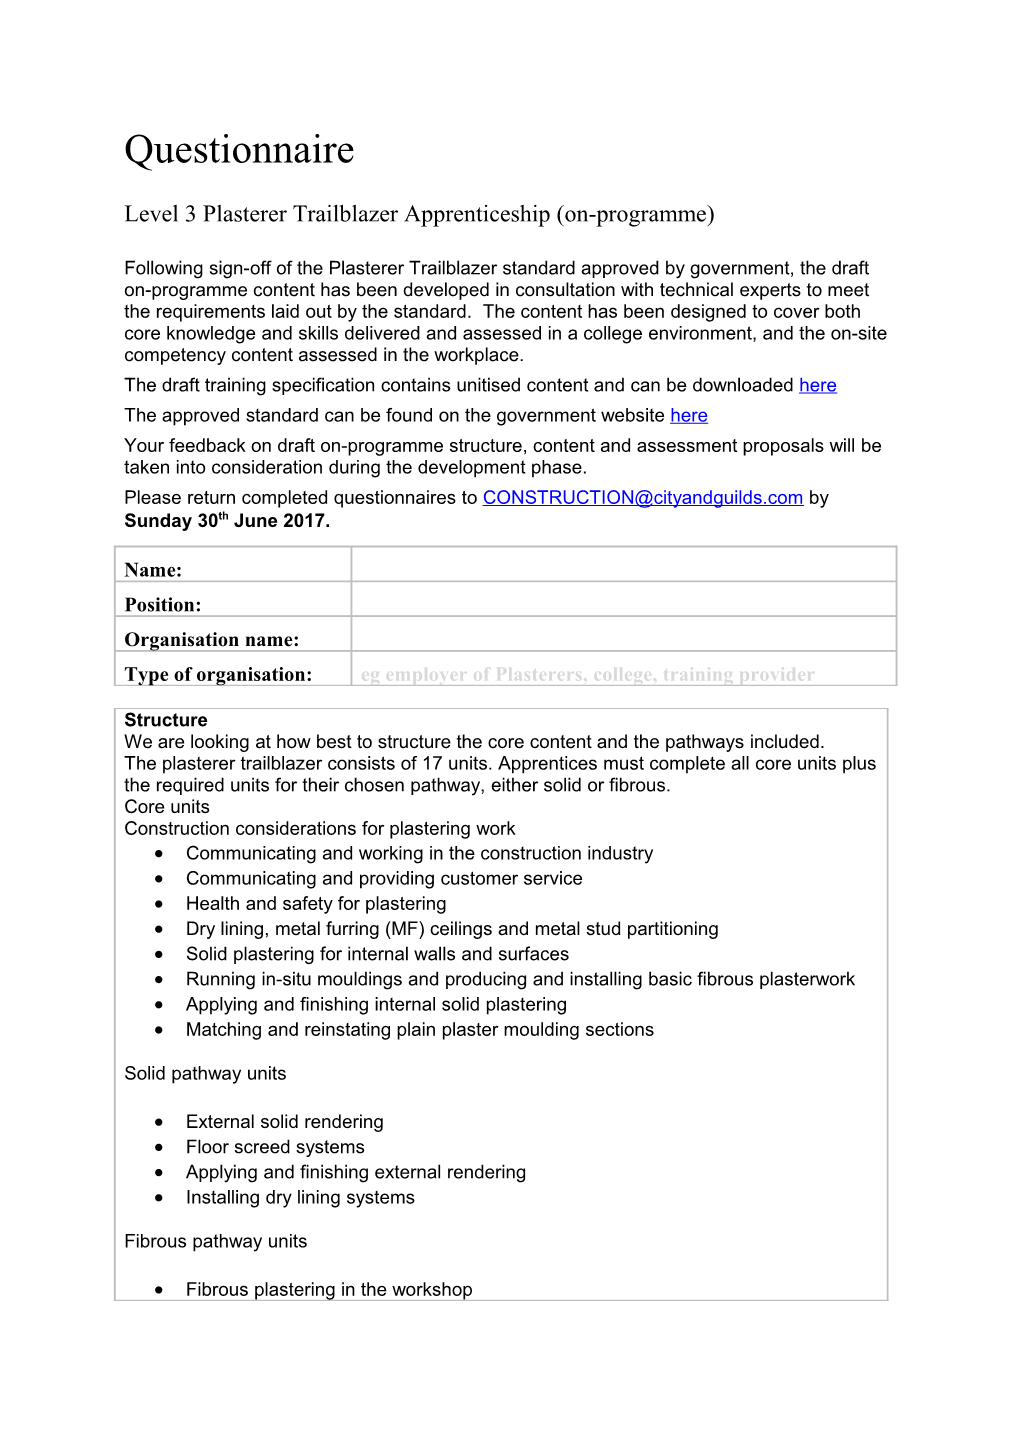 Level 3 Plasterer Trailblazer Apprenticeship (On-Programme)